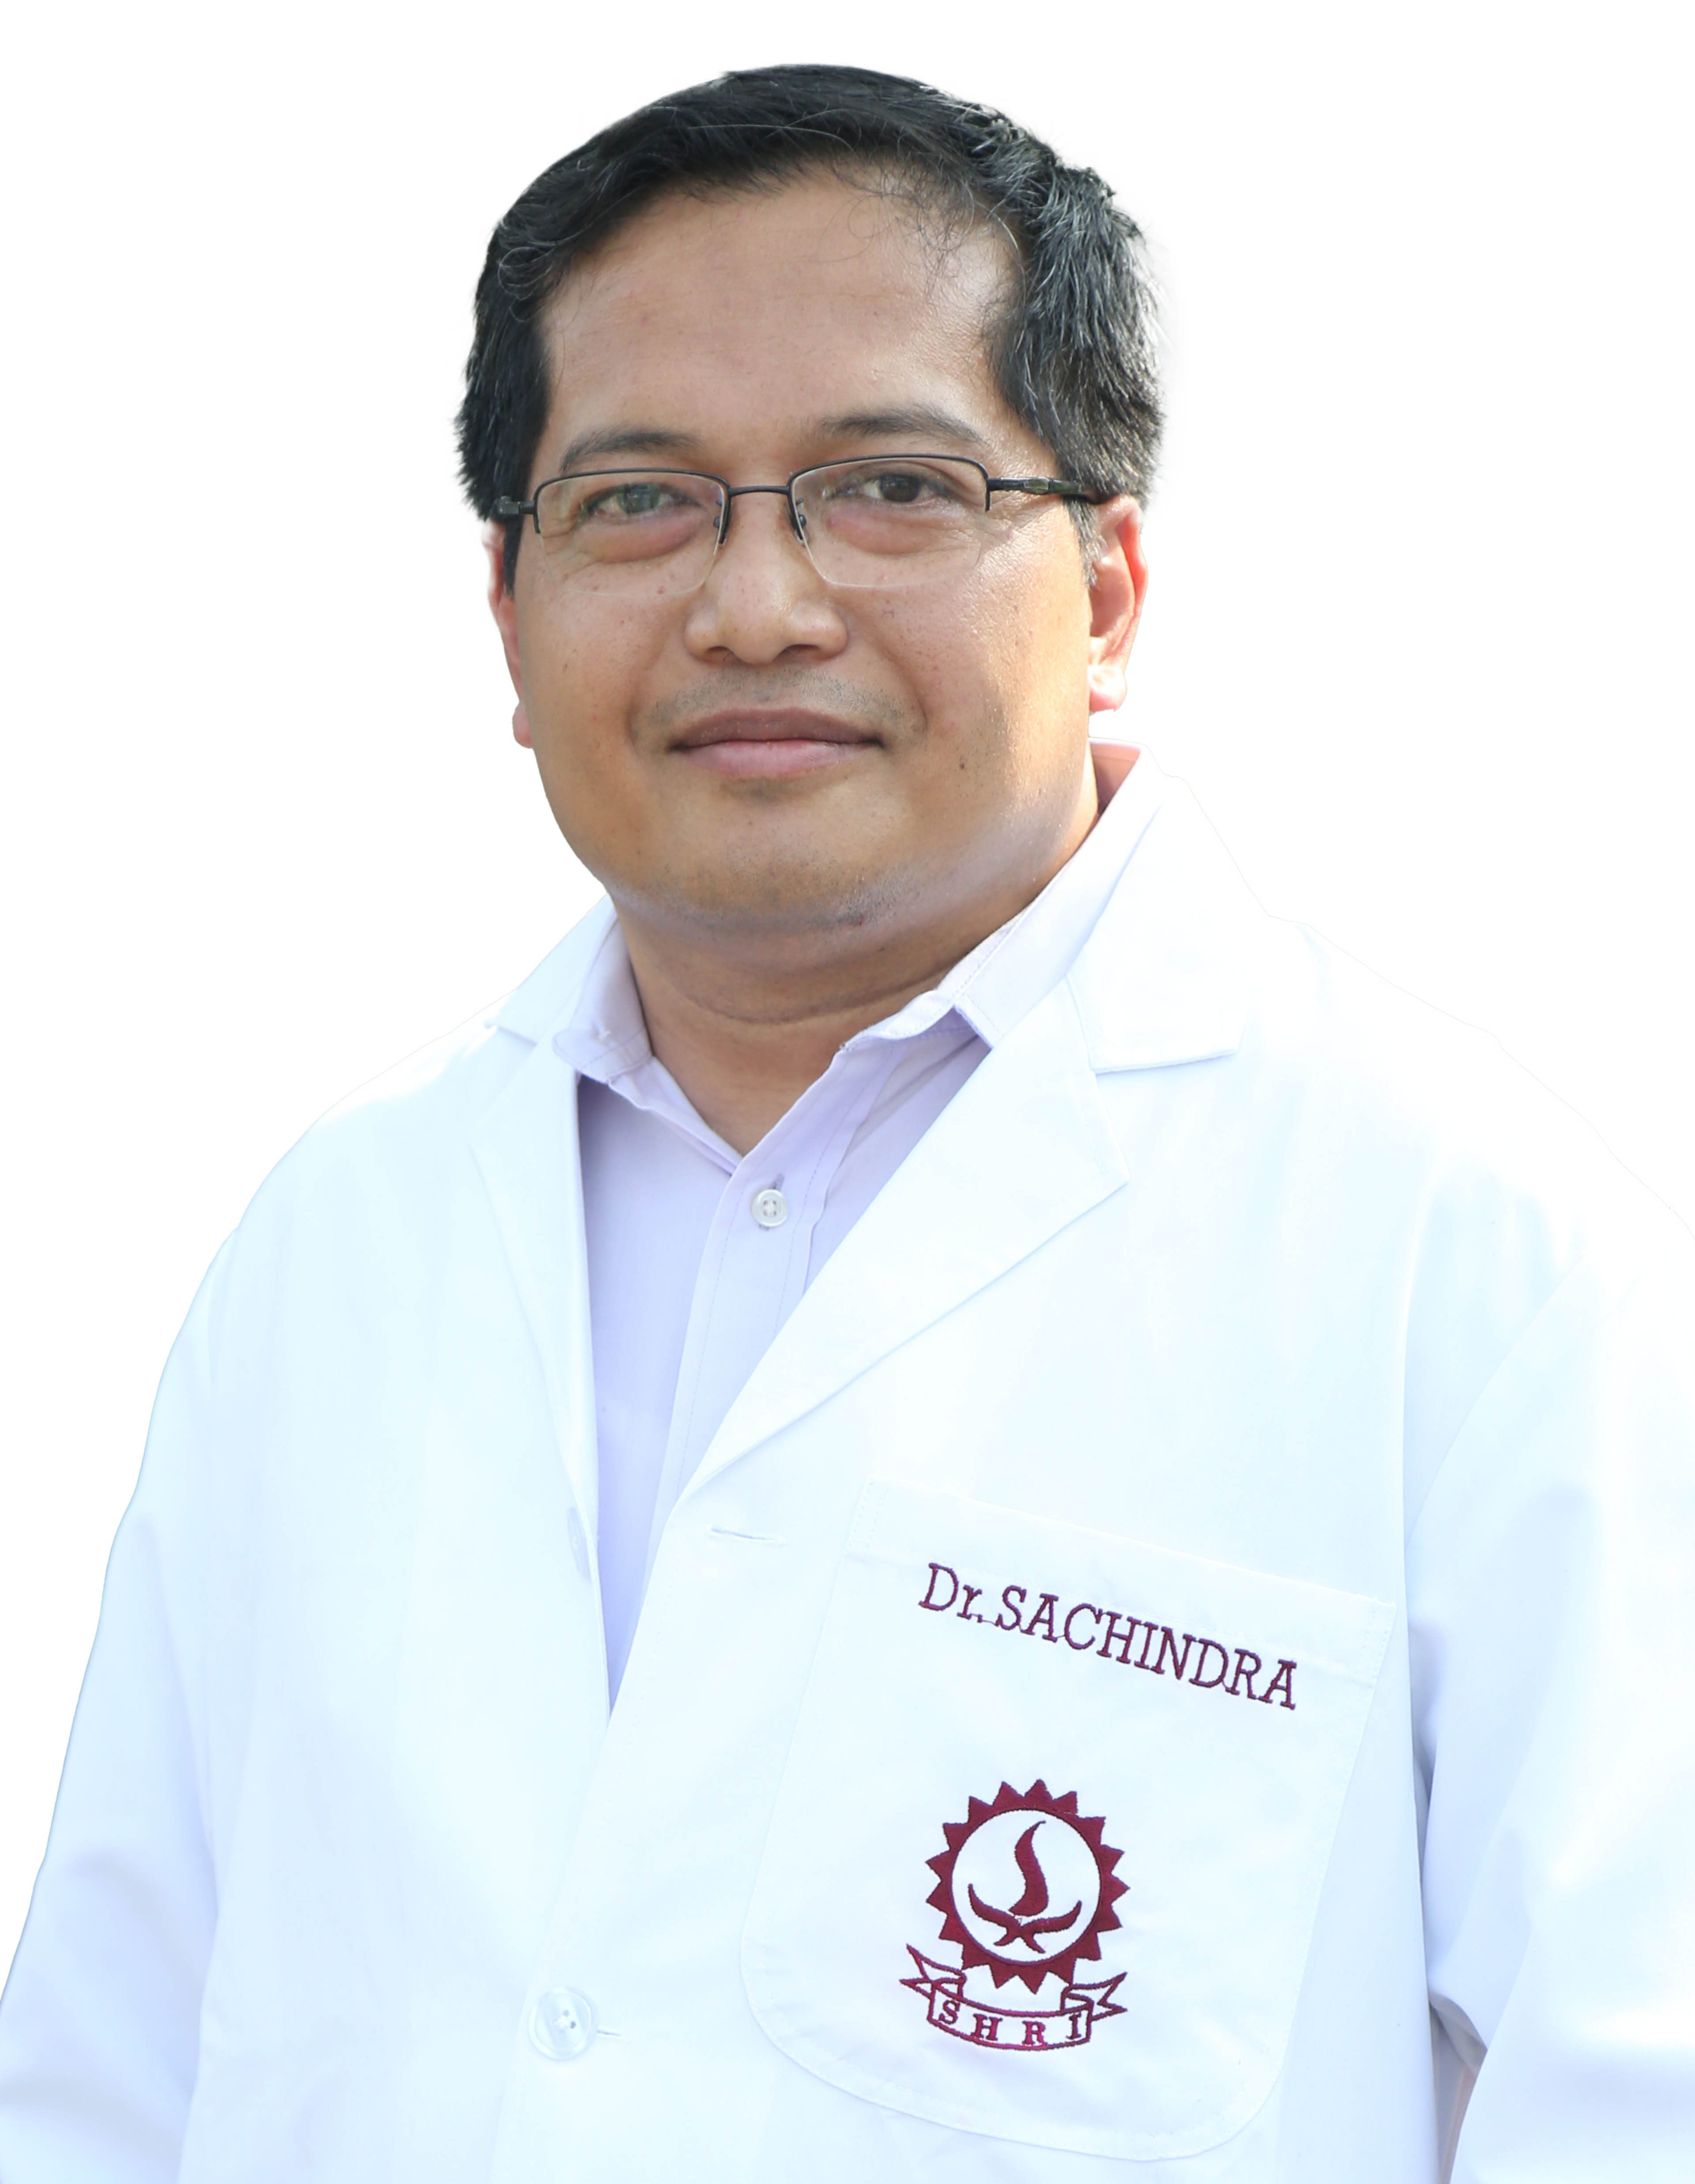 Dr. Sachindra Laishram